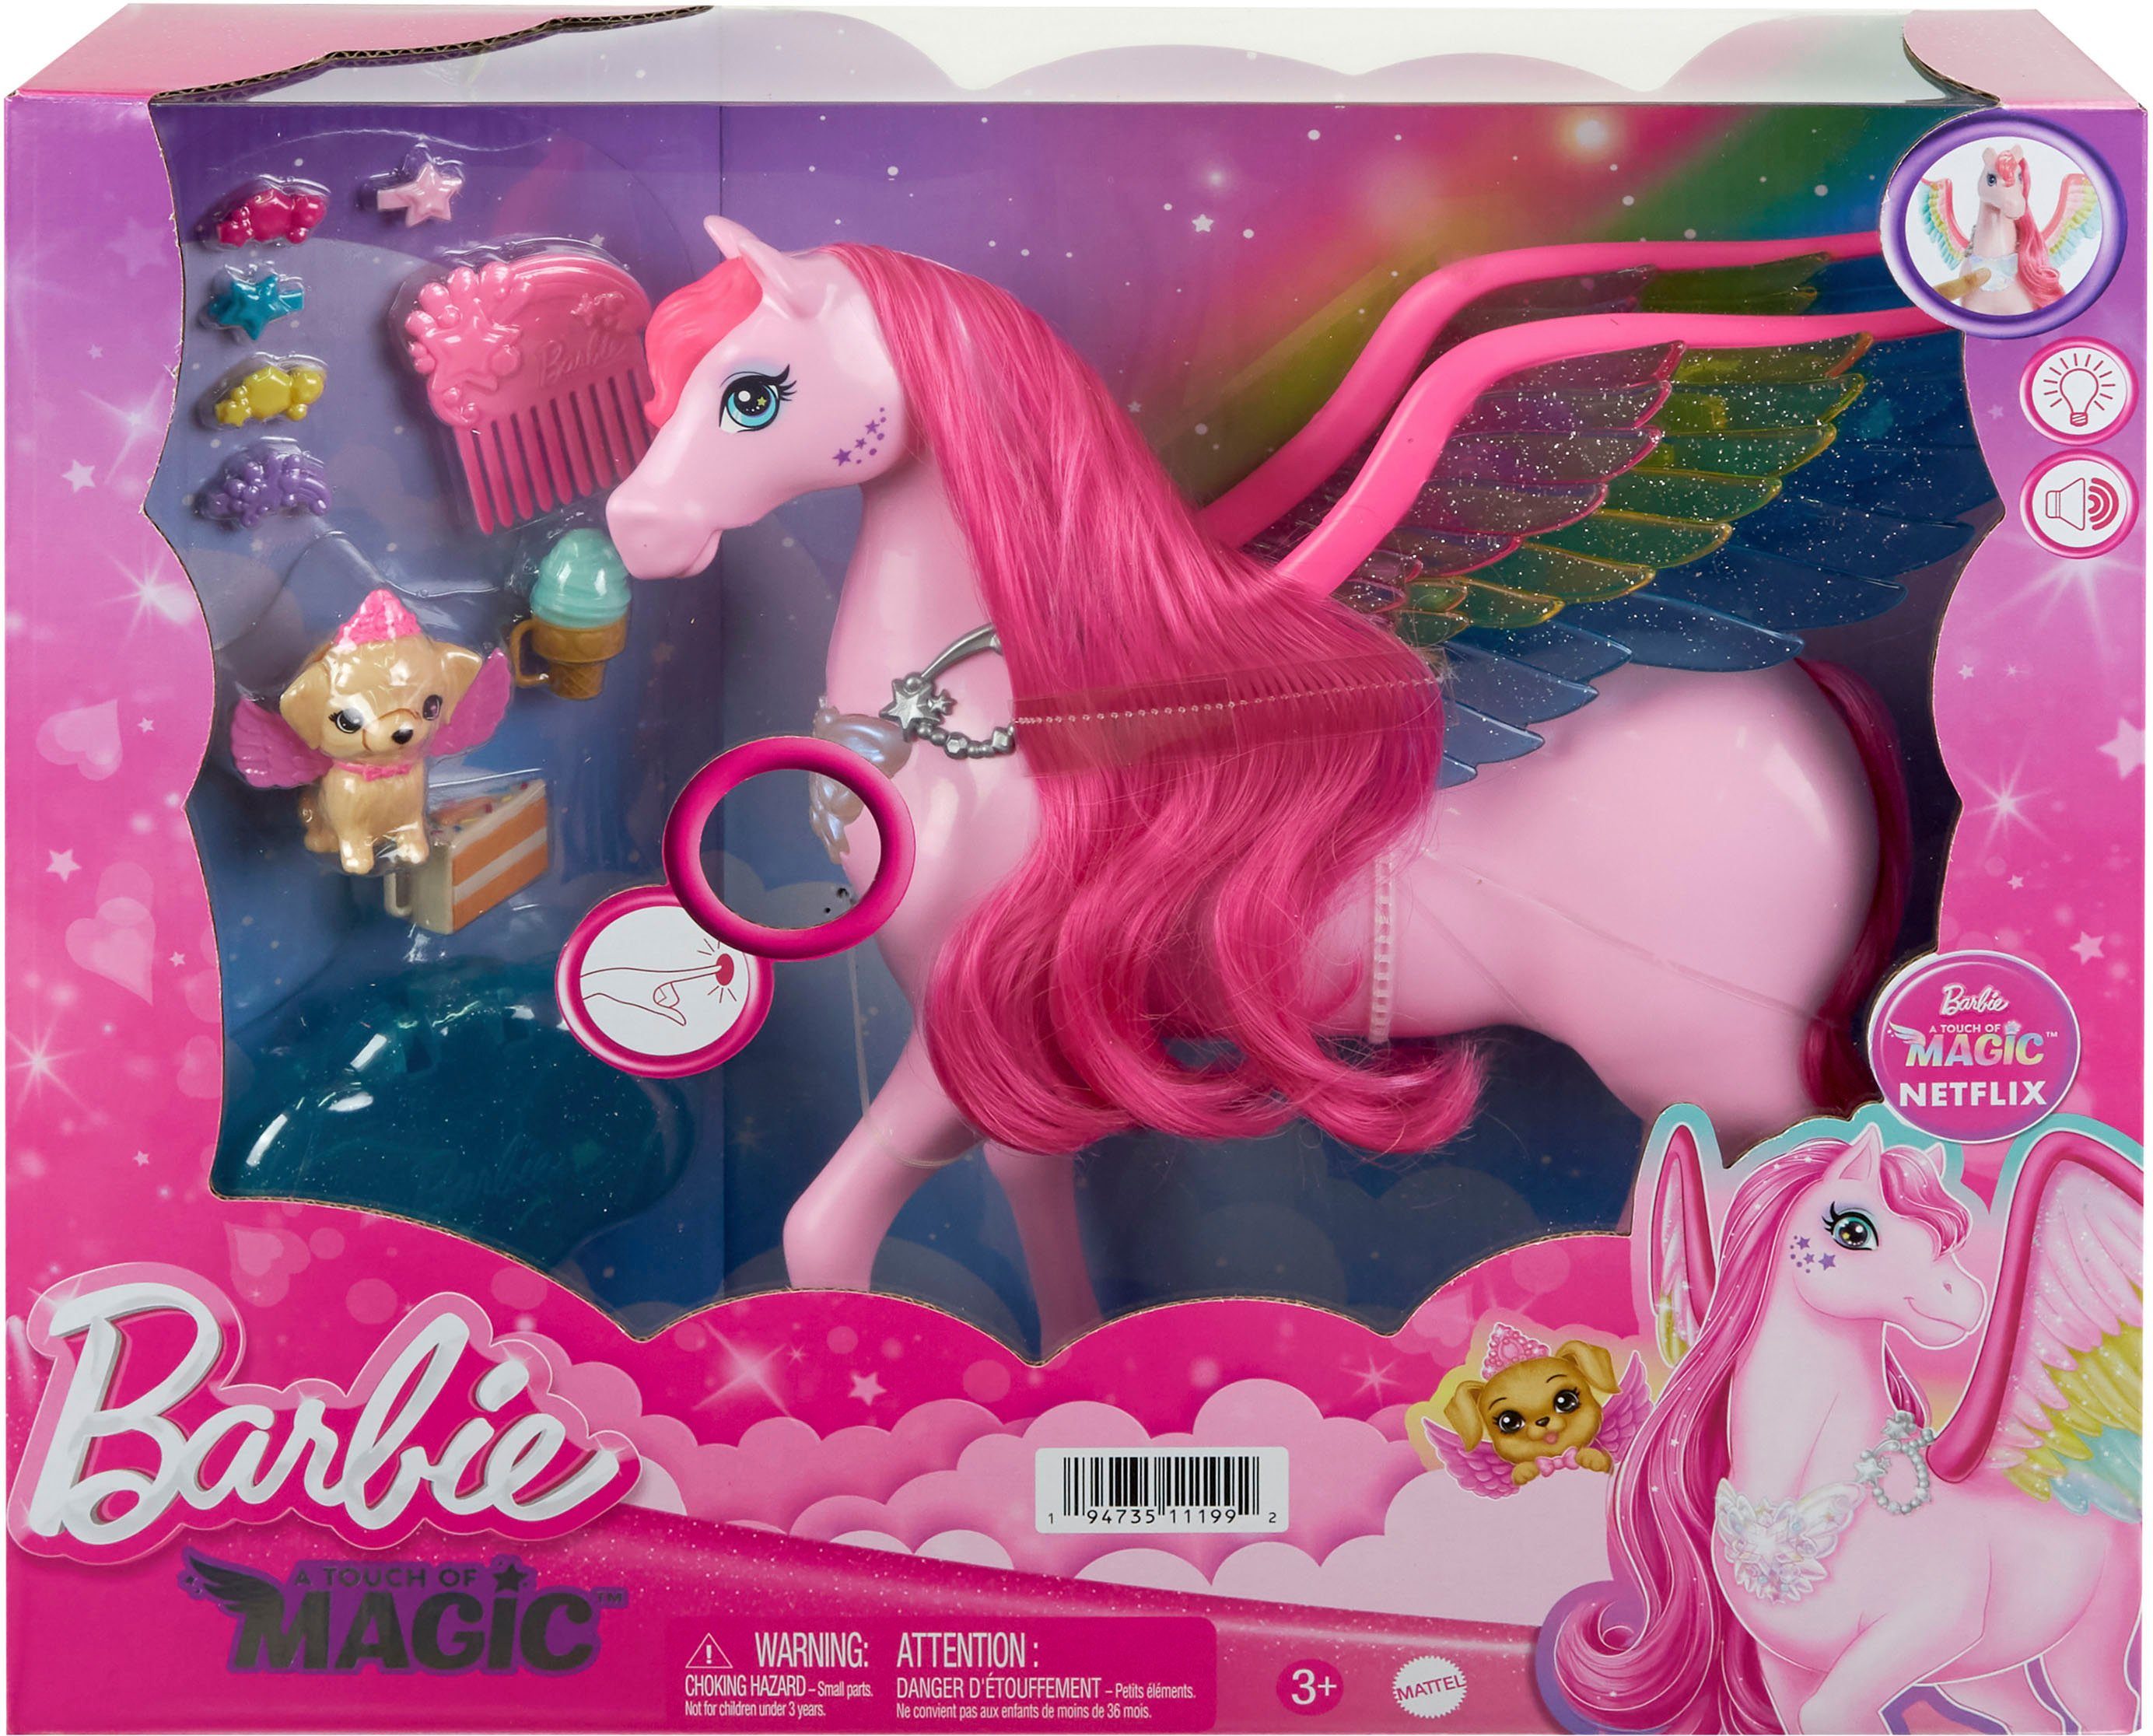 Pegasus Ein Hündchen Barbie Rosafarbener Zauber, mit verborgener Anziehpuppe